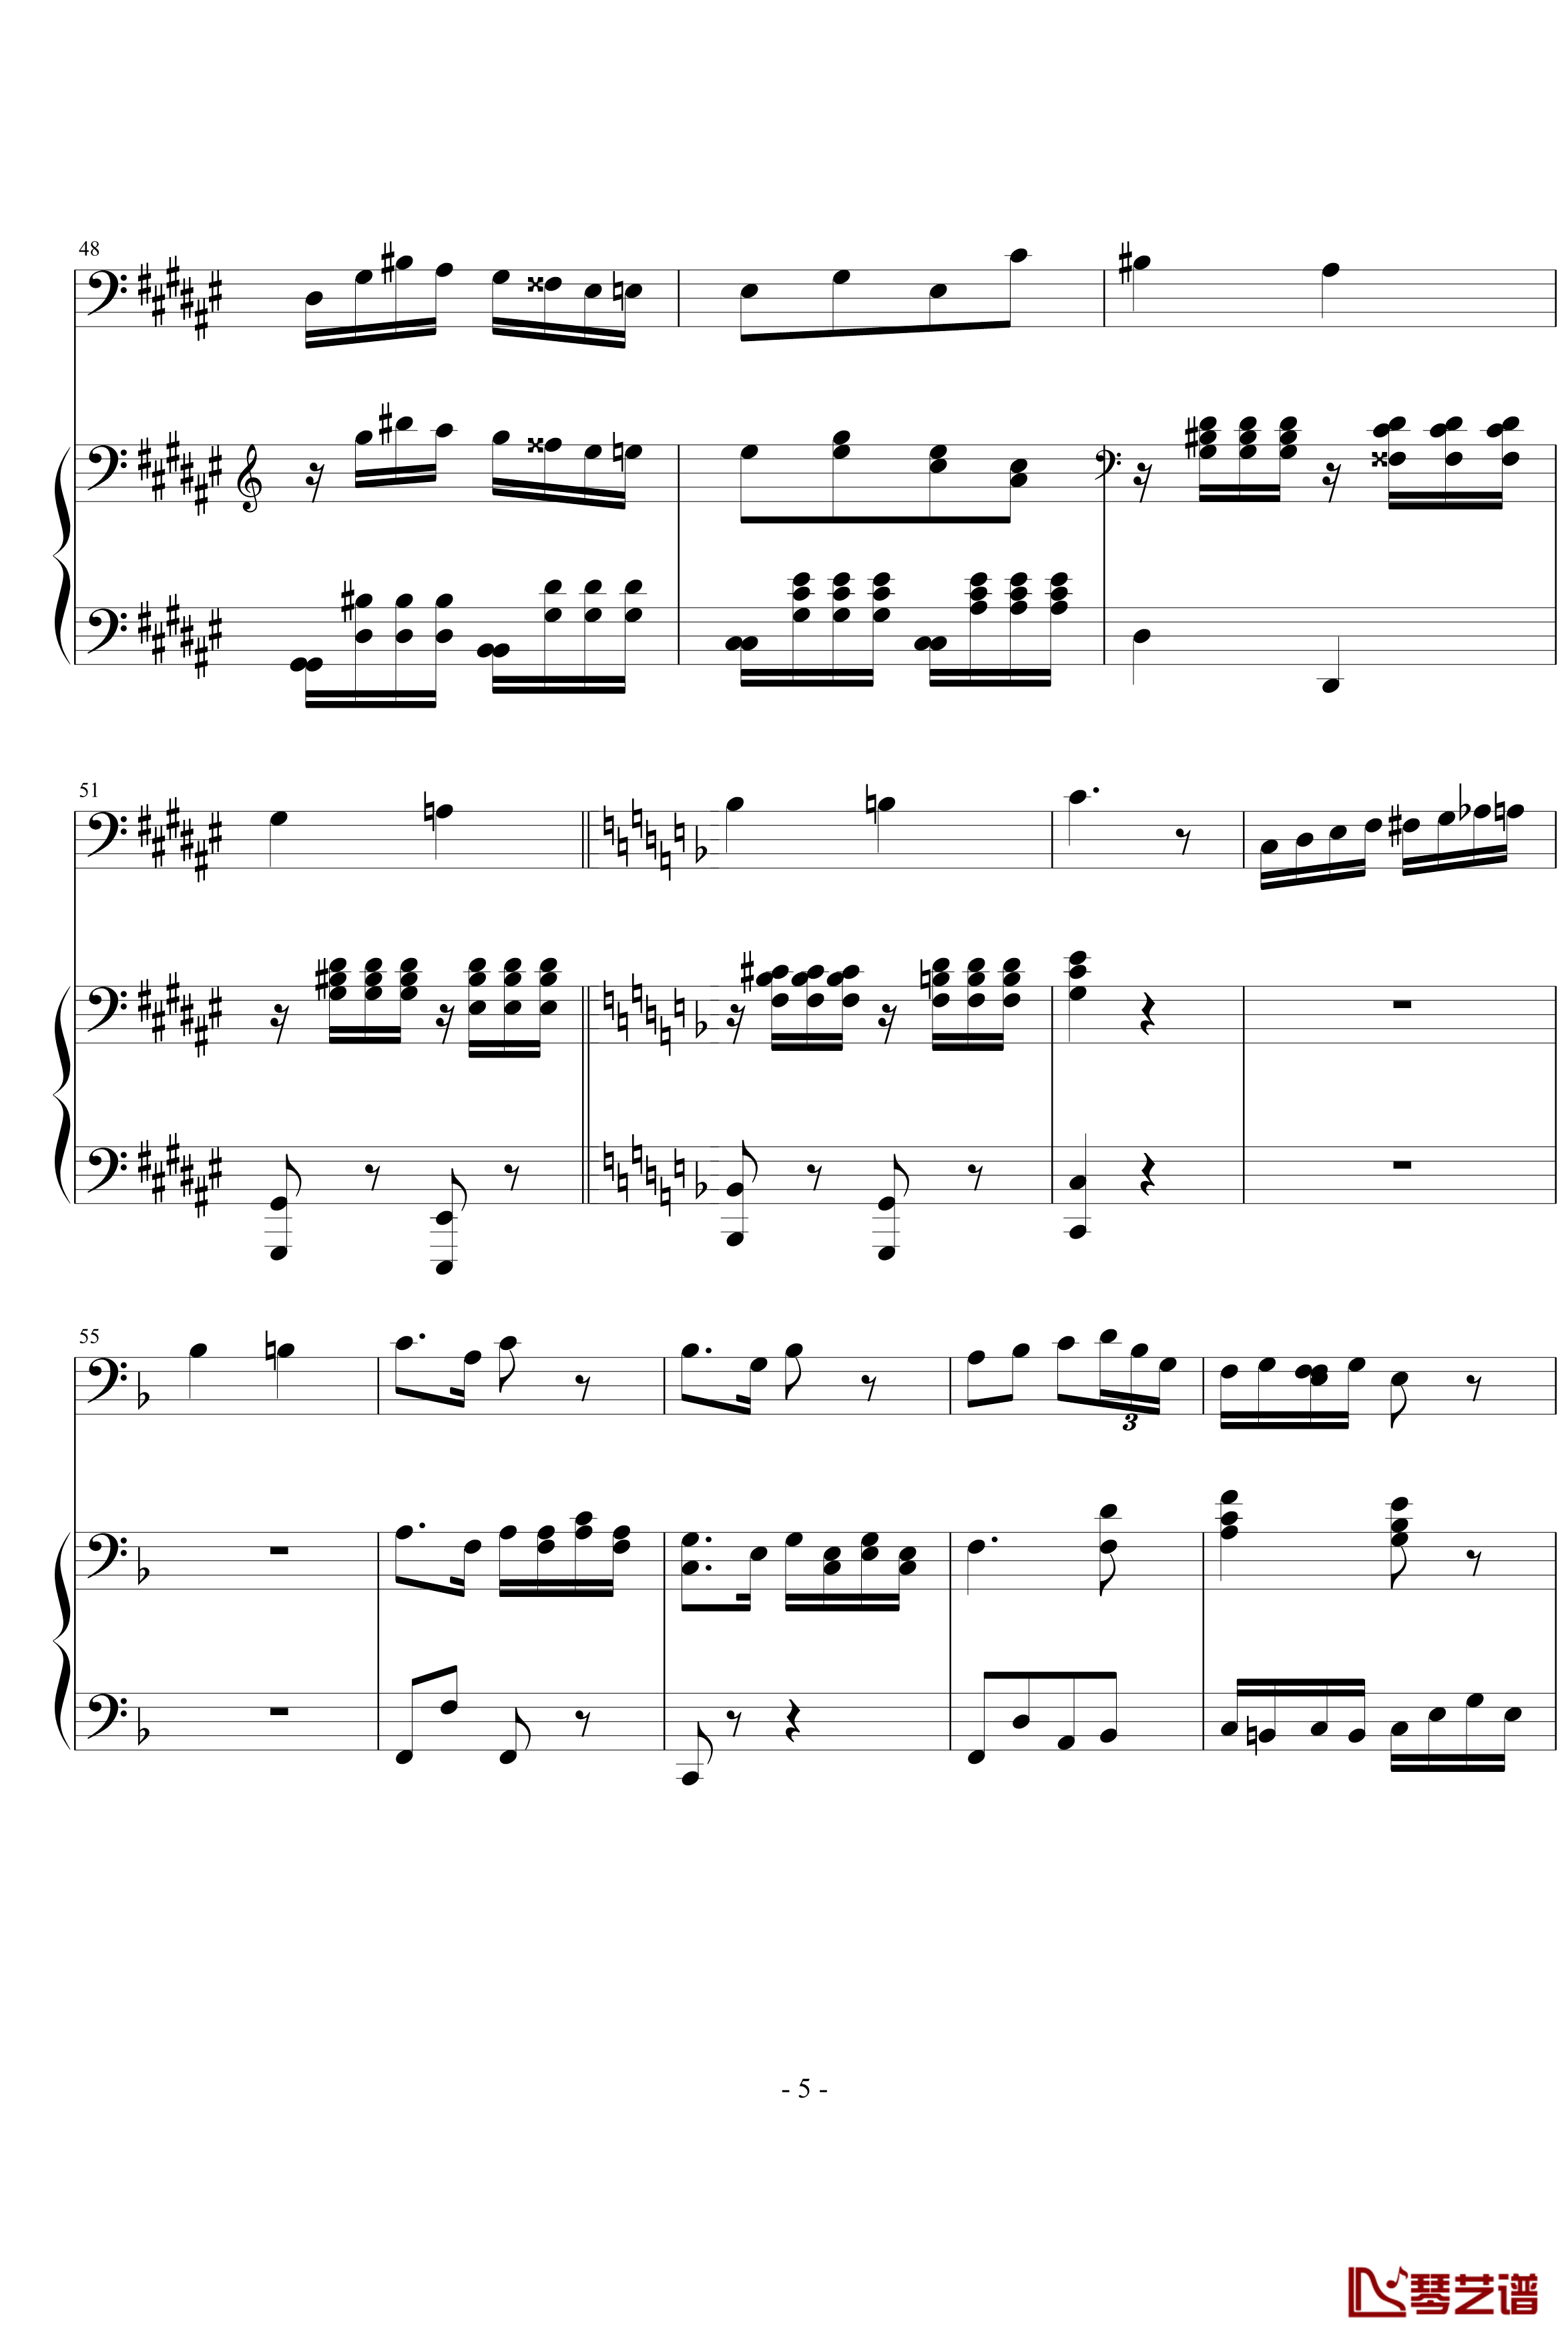 大提琴协奏曲钢琴谱-海顿